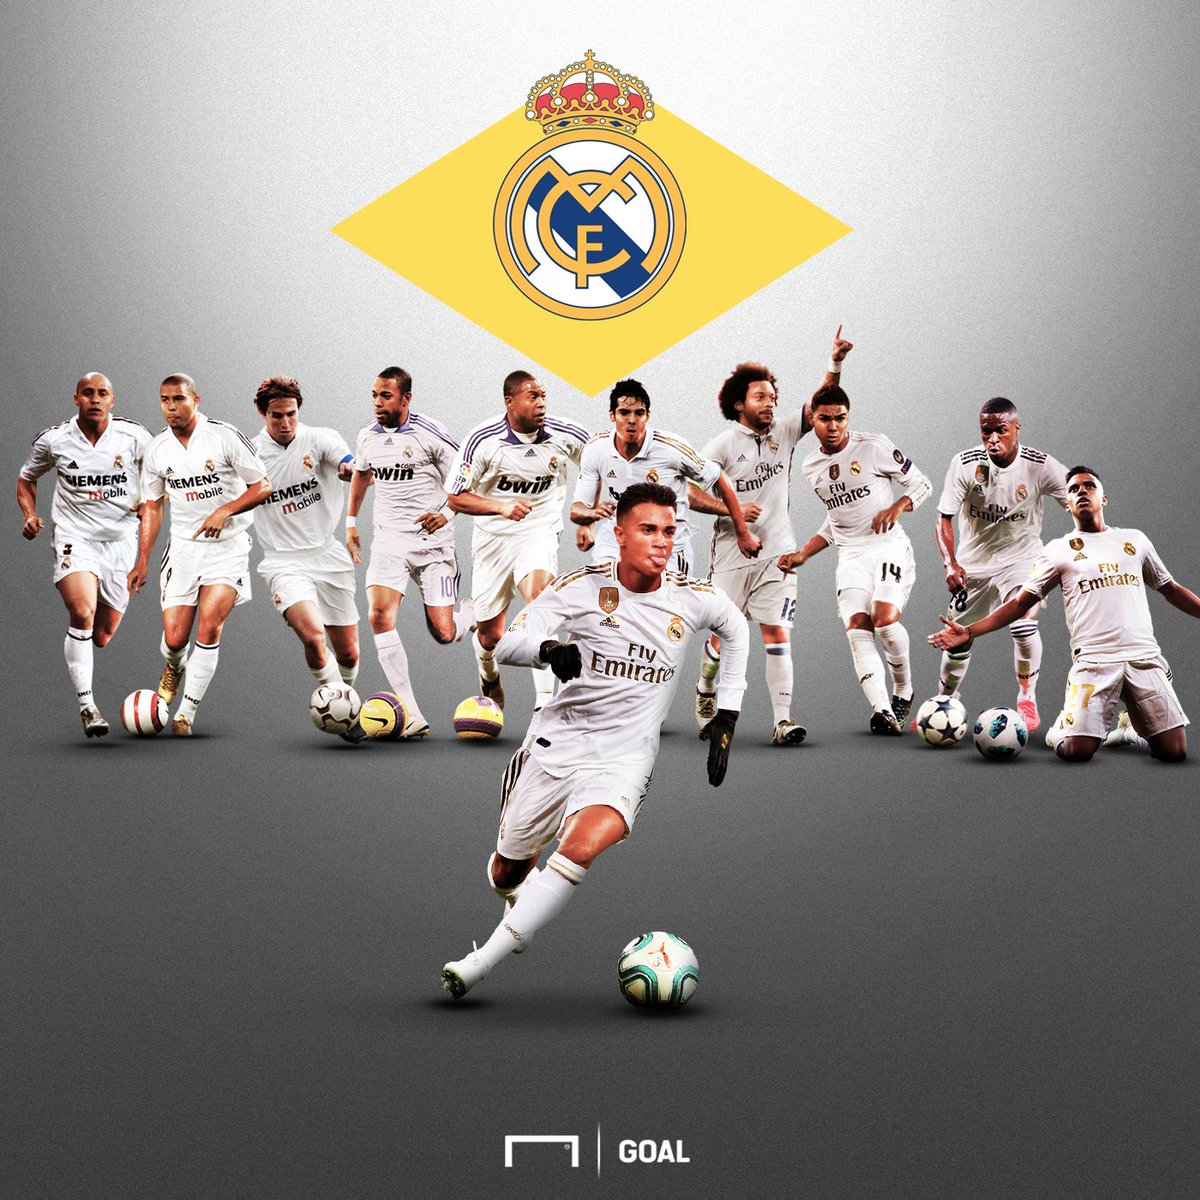 Сайты фк реал. Футбольная команда Реал Мадрид. Футболисты команды Реал Мадрид. Игроки Галактикос Реал Мадрид. Сборная Реал Мадрид 2010.